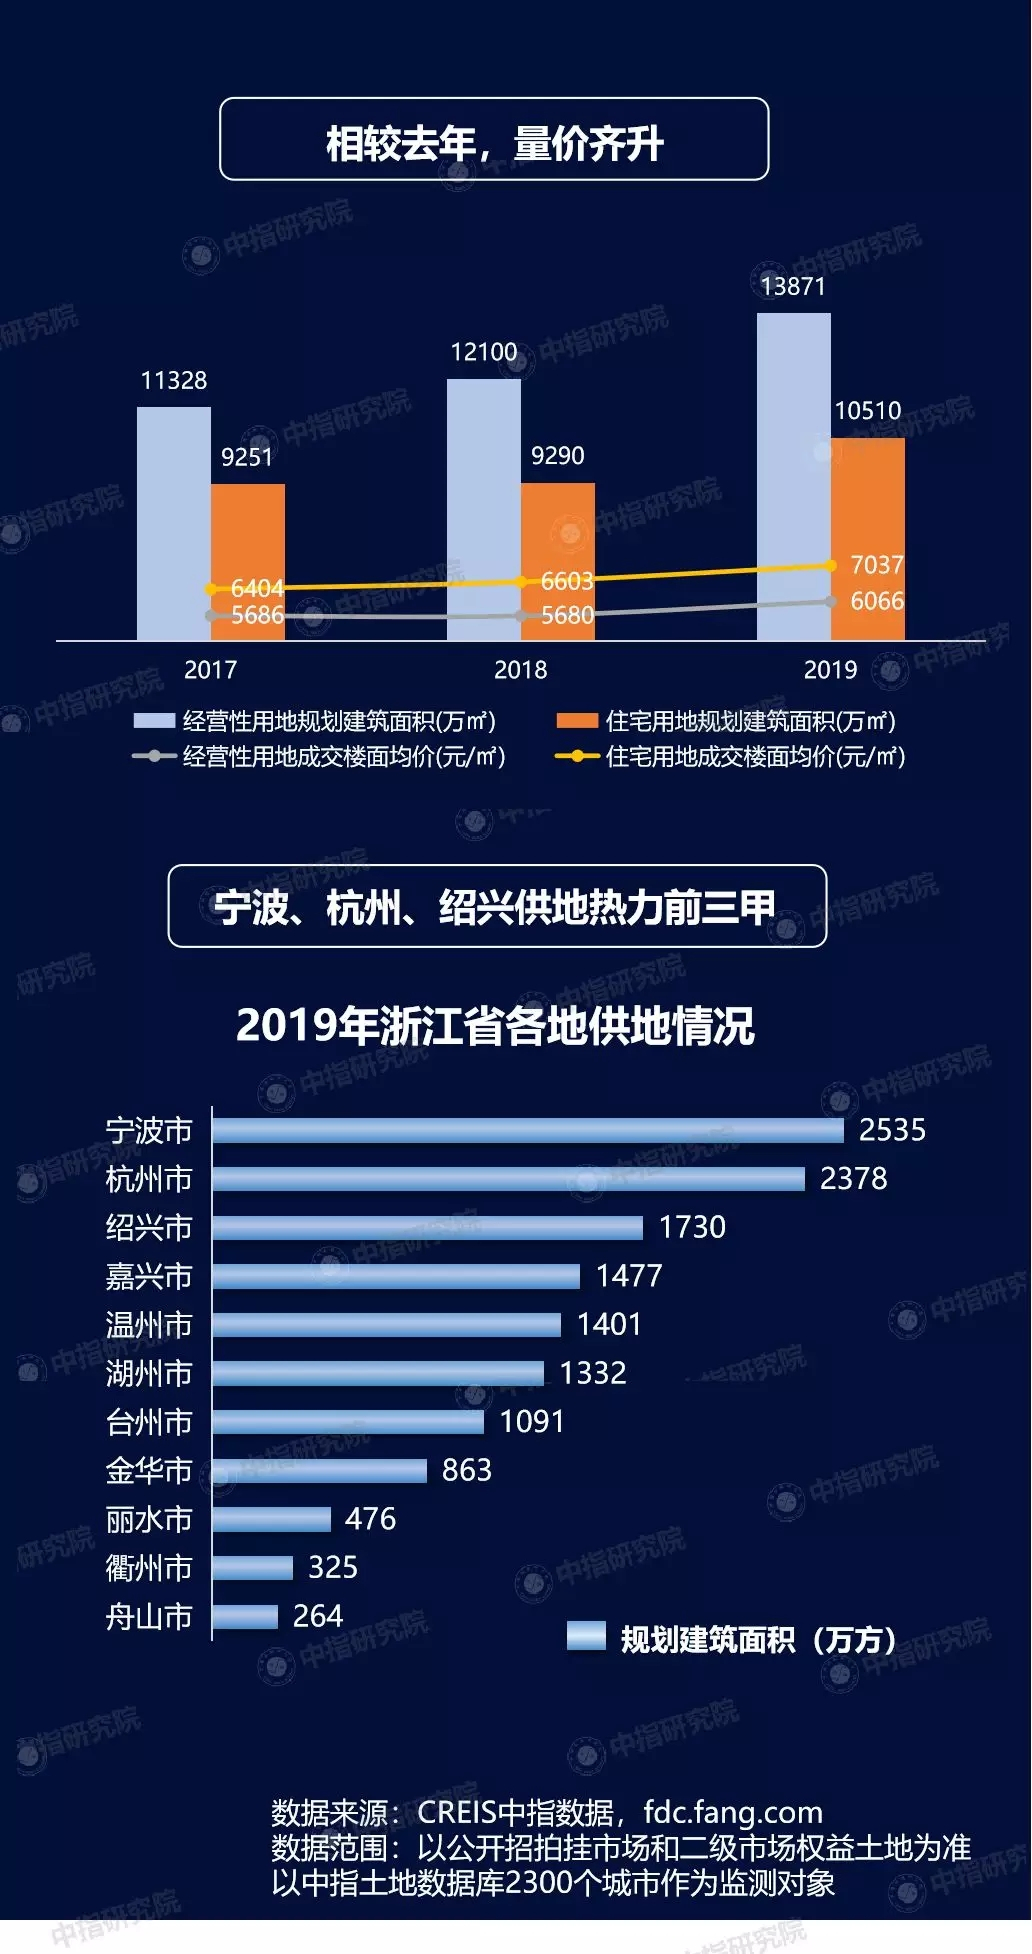 2019年浙江房地产企业销售业绩&拿地排行榜